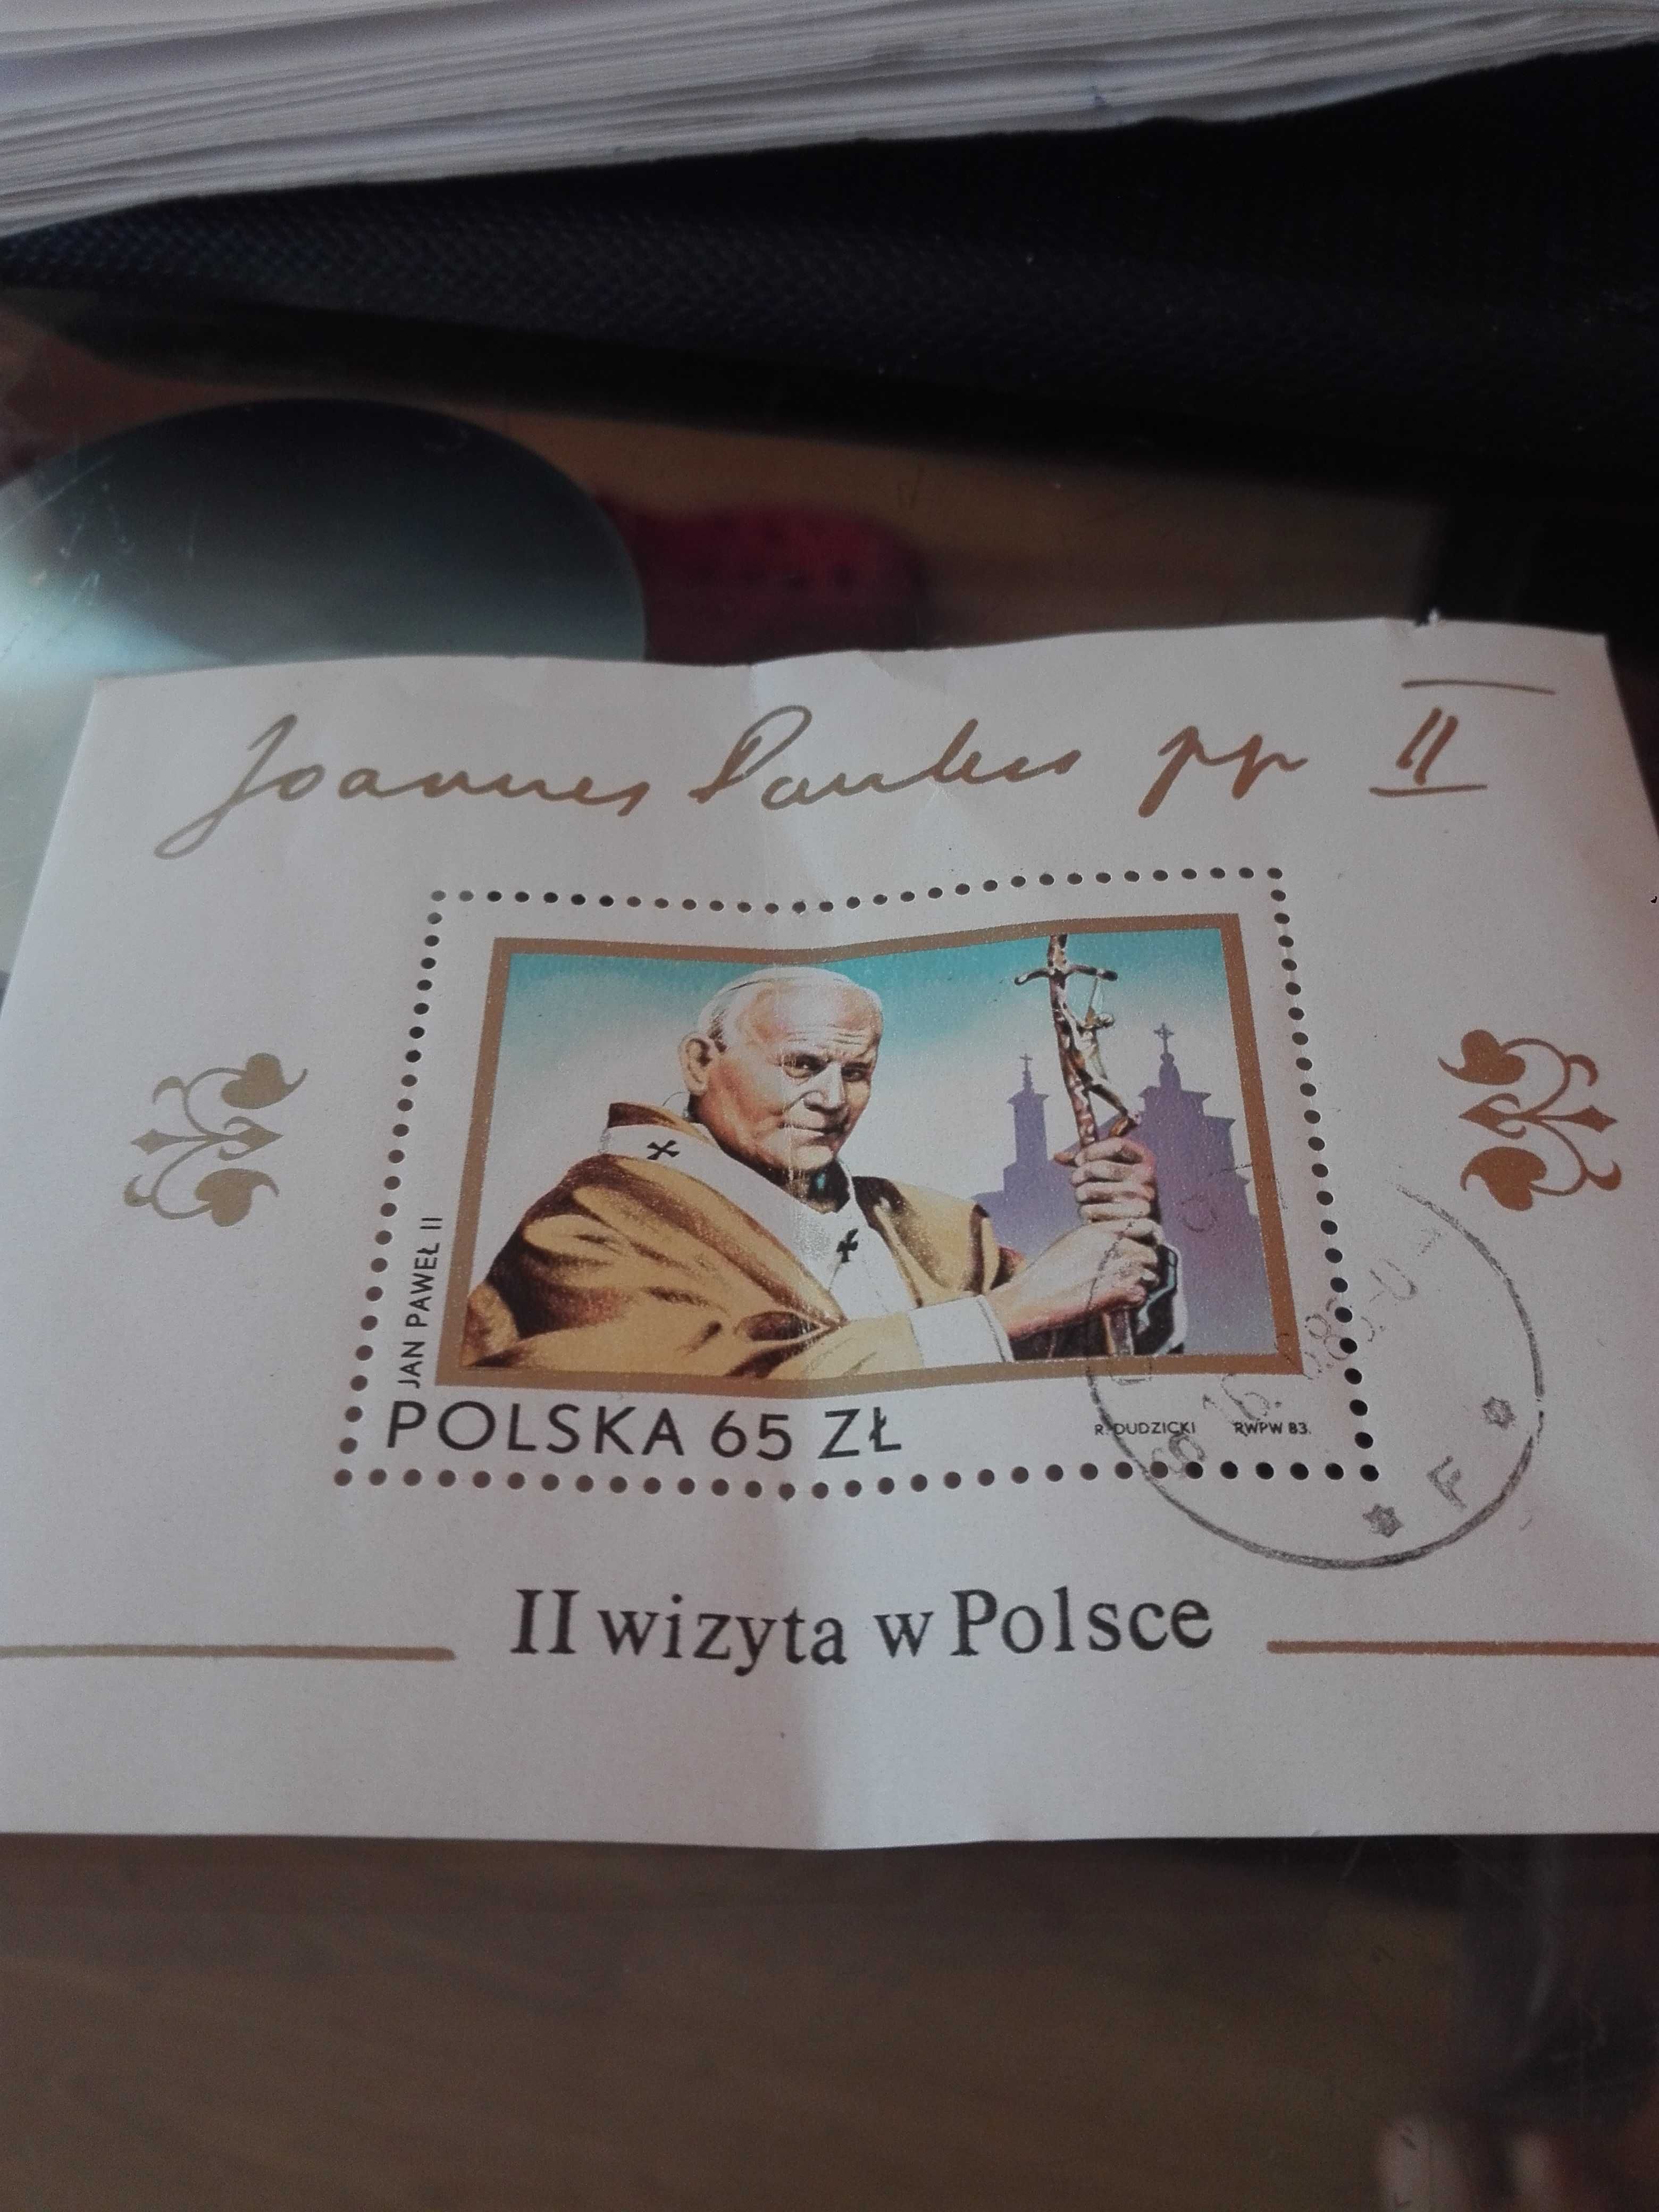 Znaczek złoty 65 zł Jan Paweł ||